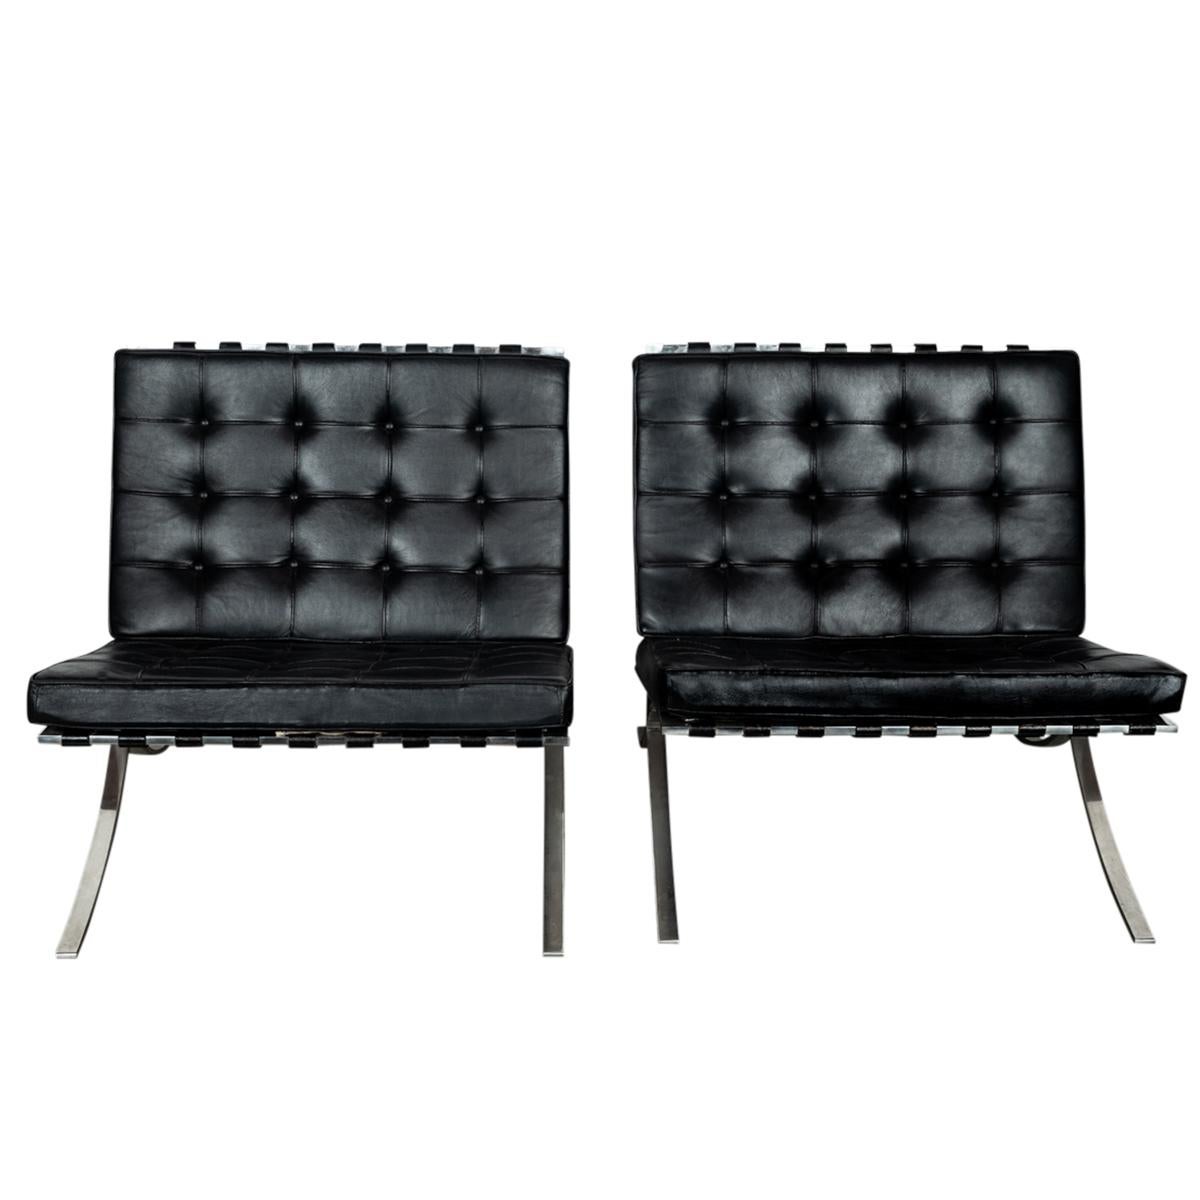 Ein Sammlerpaar der frühen Knoll Associates Produktion Mies van der Rohe Barcelona Stühle, 1961.
Knoll hatte die Lizenz zur Herstellung des Barcelona-Stuhls ab 1953, dieses Paar wurde 1961 gekauft und befindet sich seit dem Kauf im Besitz des